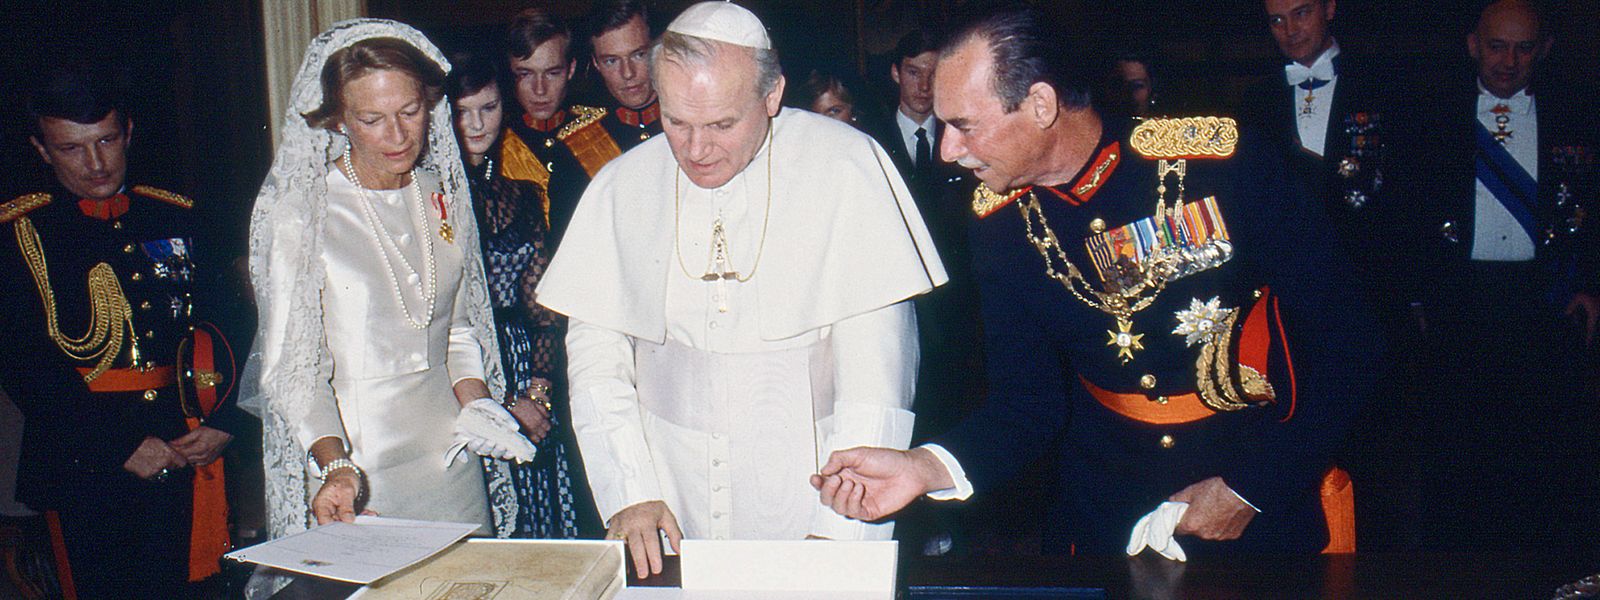 Die Verbindung des großherzoglichen Hofes zu den Päpsten war über Jahrzehnte hinweg sehr eng.